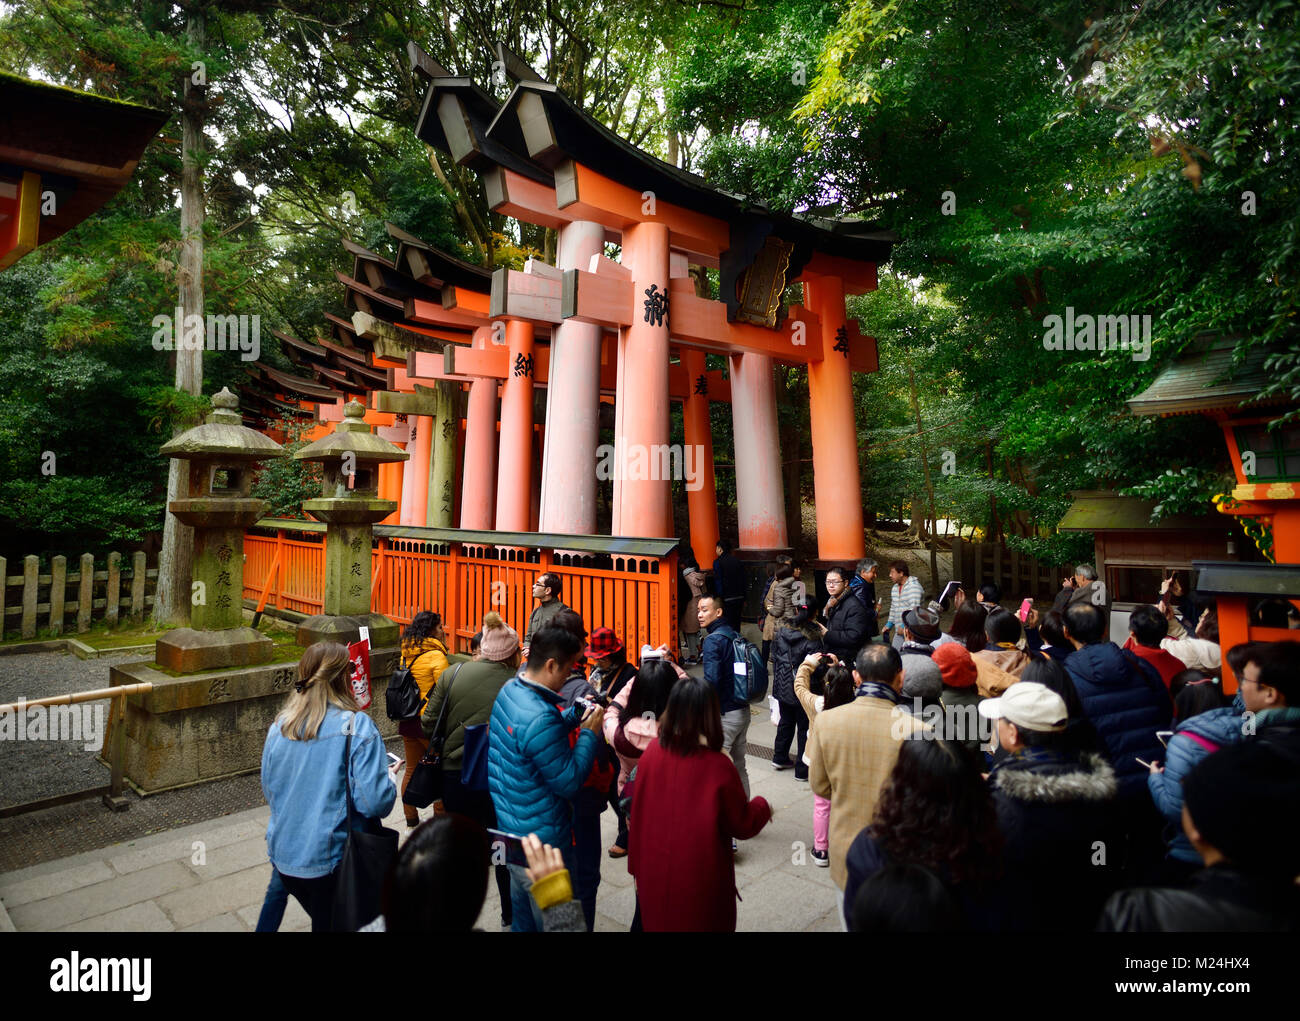 Tourists entering Senbon Torii path leading to inner shrines of Fushimi Inari Taisha head shrine in Fushimi Ward, Kyoto, Japan 2017 Stock Photo